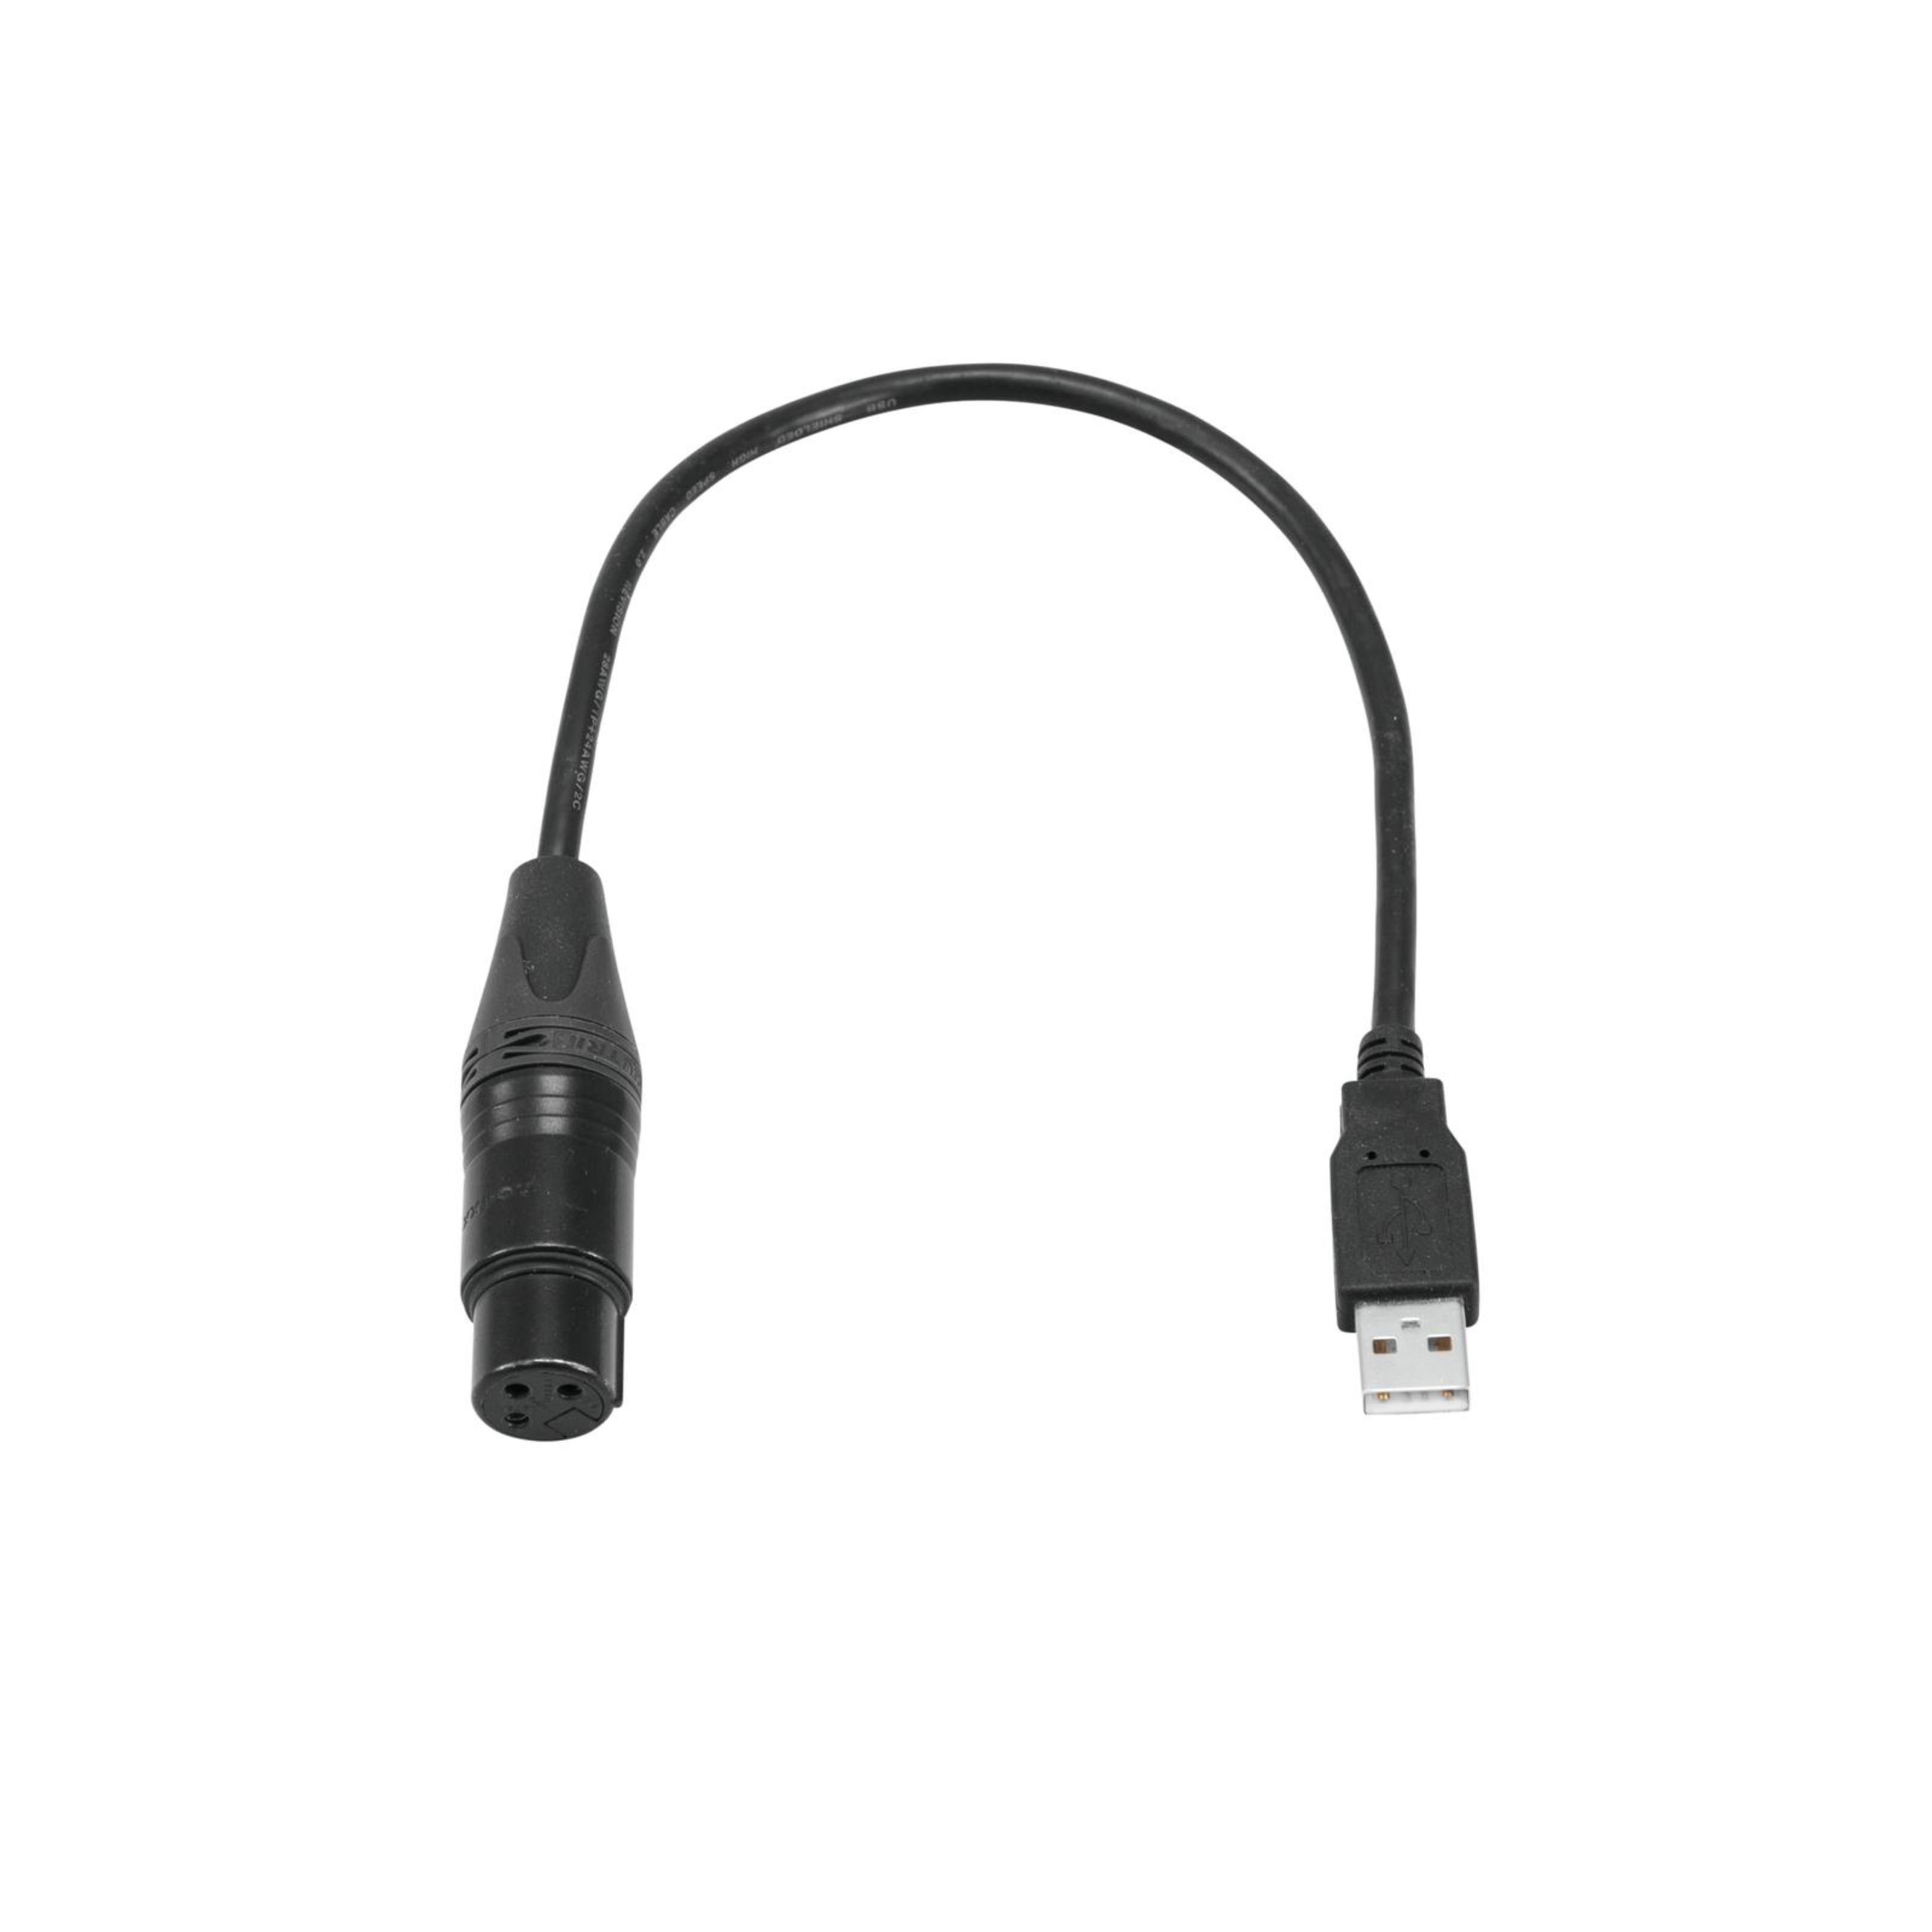 EUROLITE Mischpult, (USB-DMX512-Interface /Update-Adapter), USB-DMX512-Interface /Update-Adapter - DMX Steuersoftware